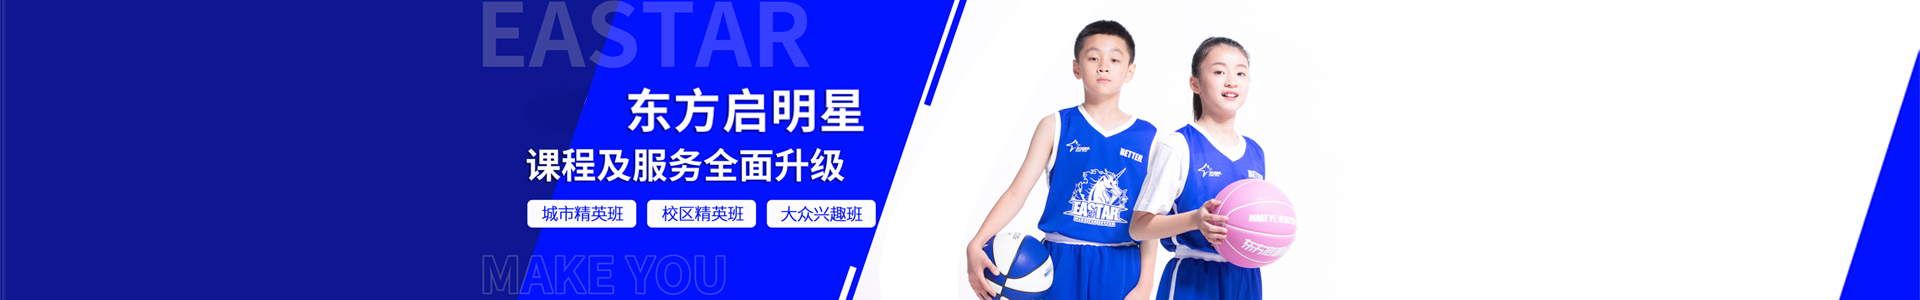 广州东方启明星少儿篮球培训学校